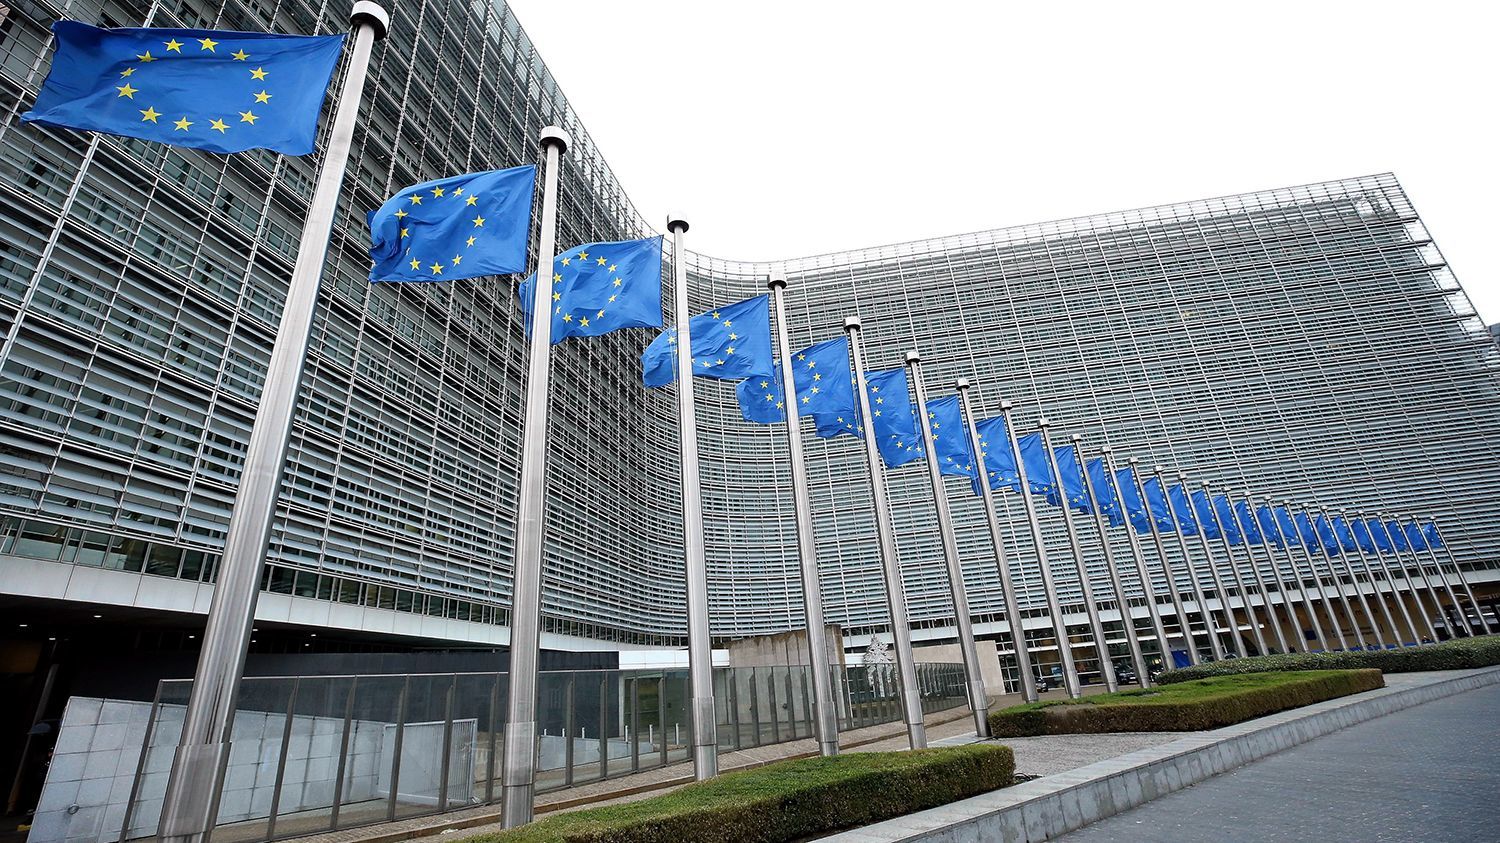 Beismerő vallomás tett a 90 millió forintnyi uniós támogatást elcsaló szabolcsi vállalkozó